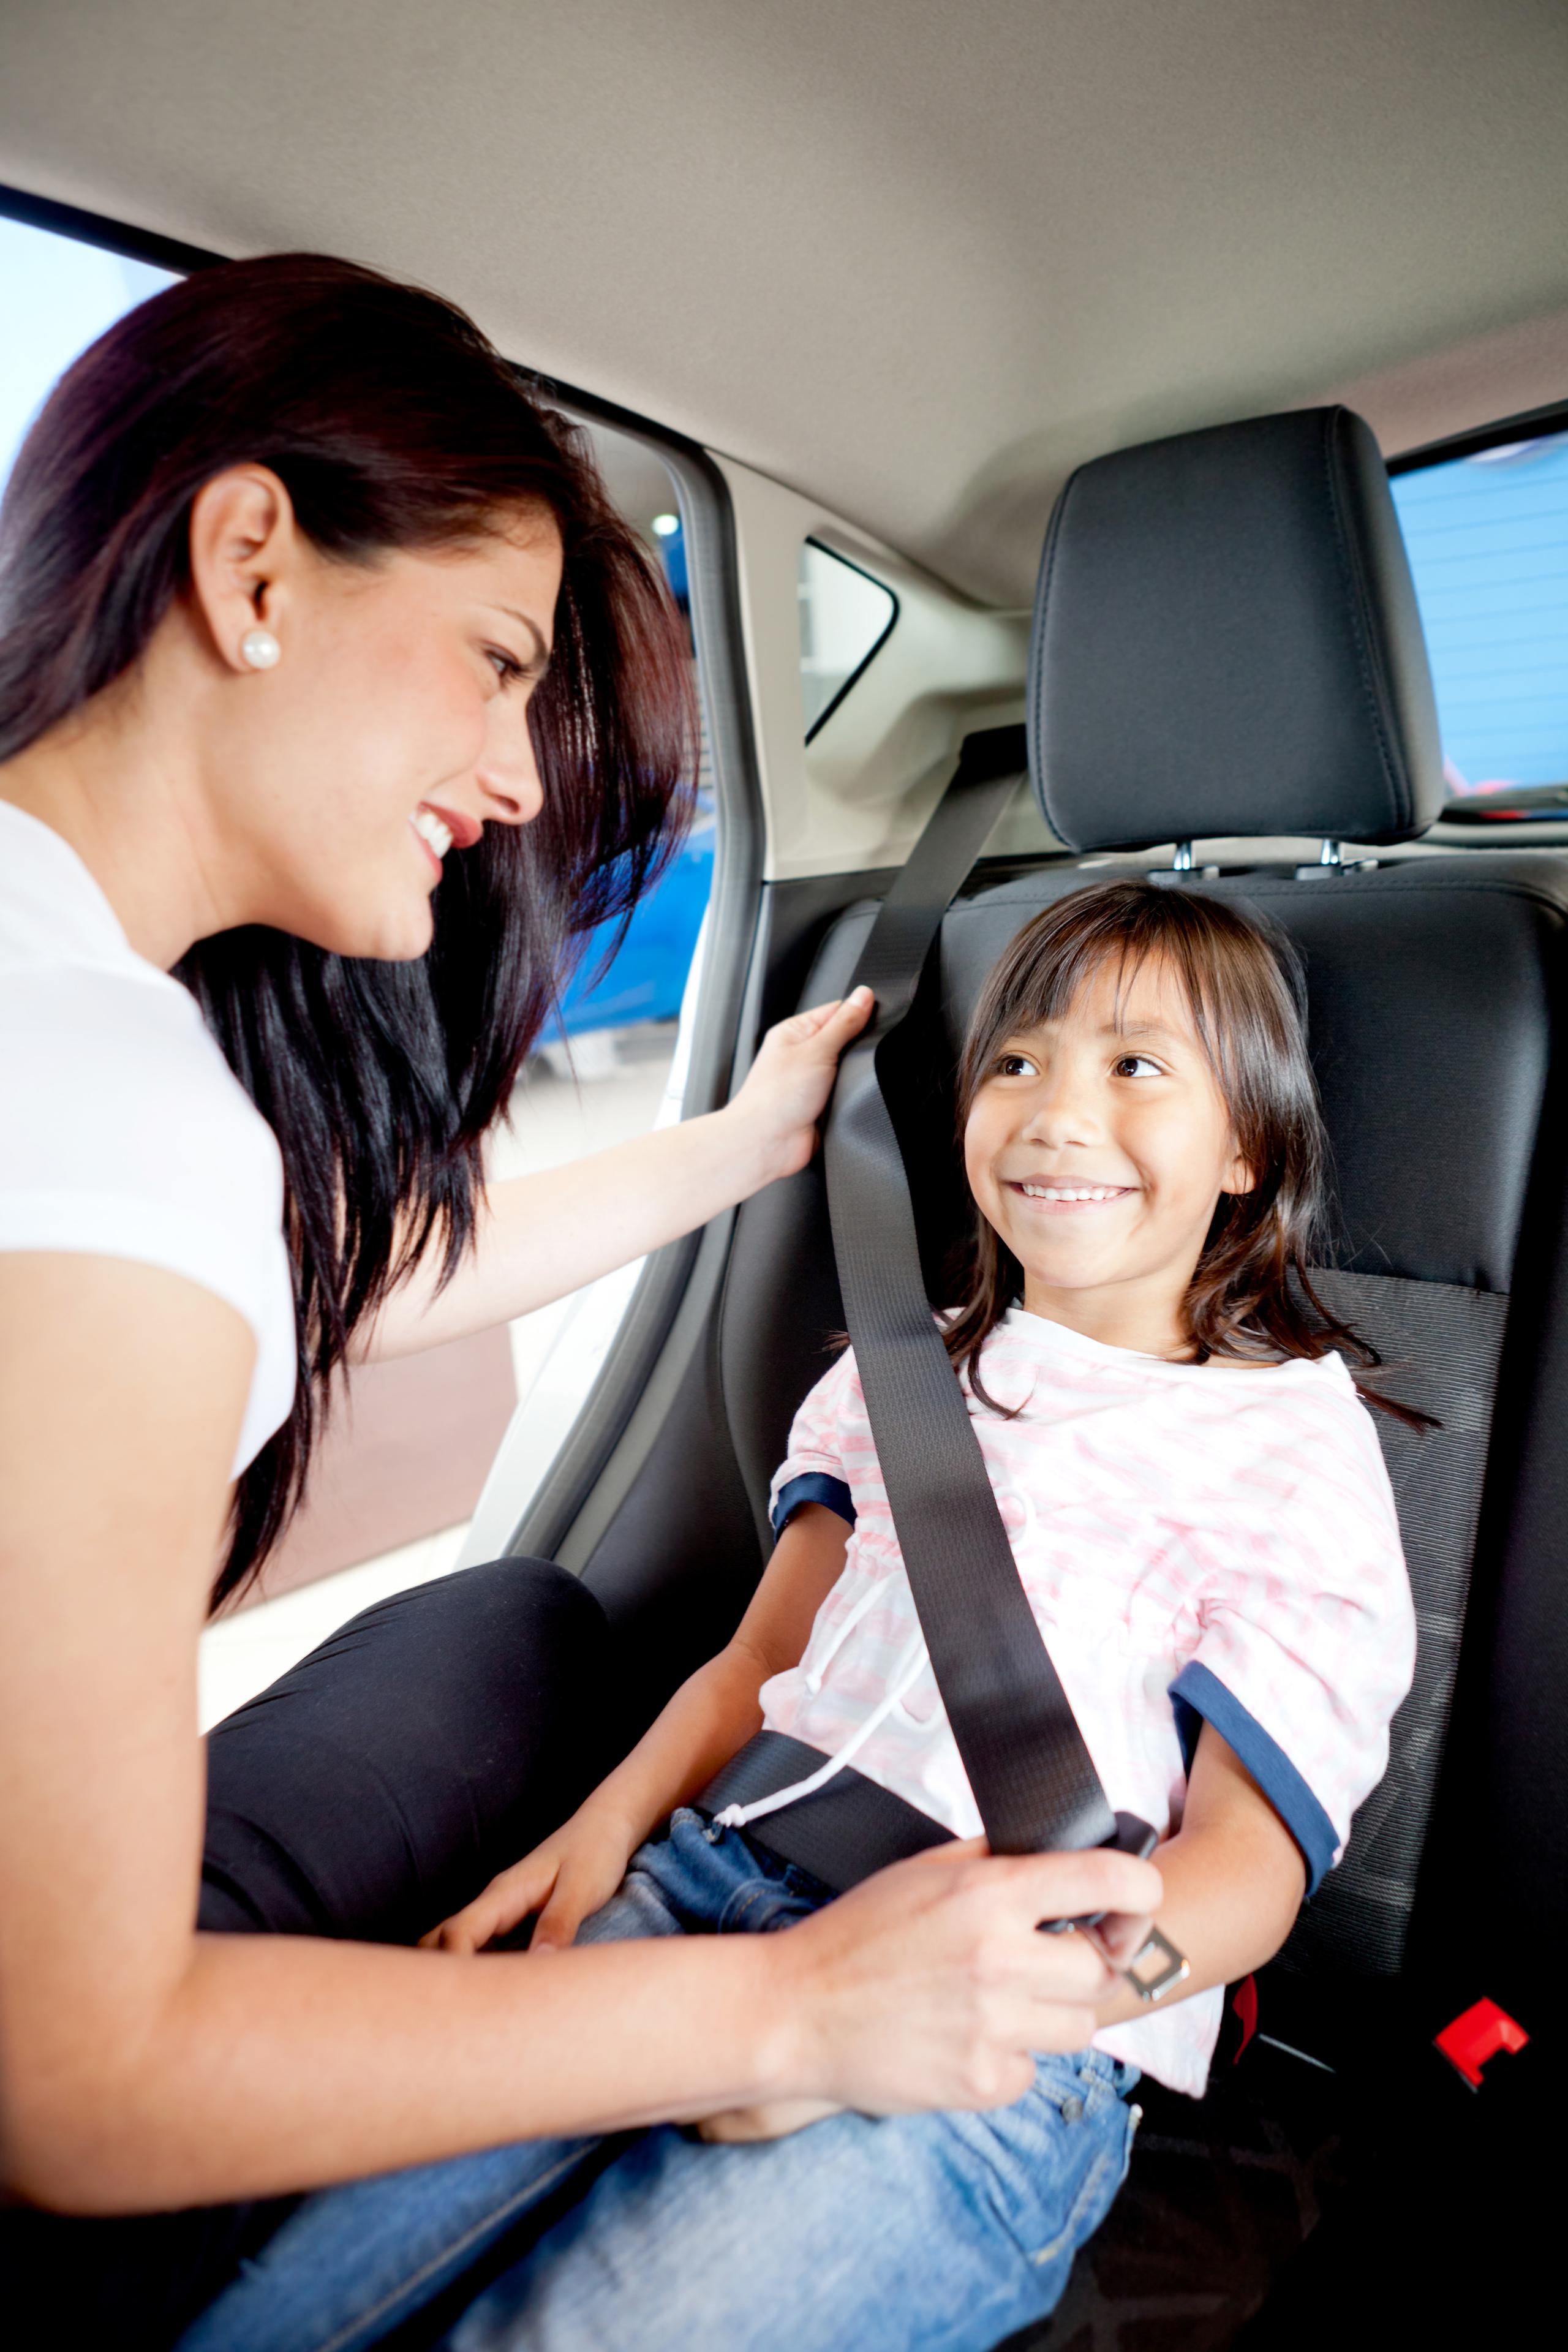 La Ley 22 de tránsito requiere que los menores entre las edades de 0 a 8 años viajen en un asiento protector adecuado a su edad, peso y estatura.